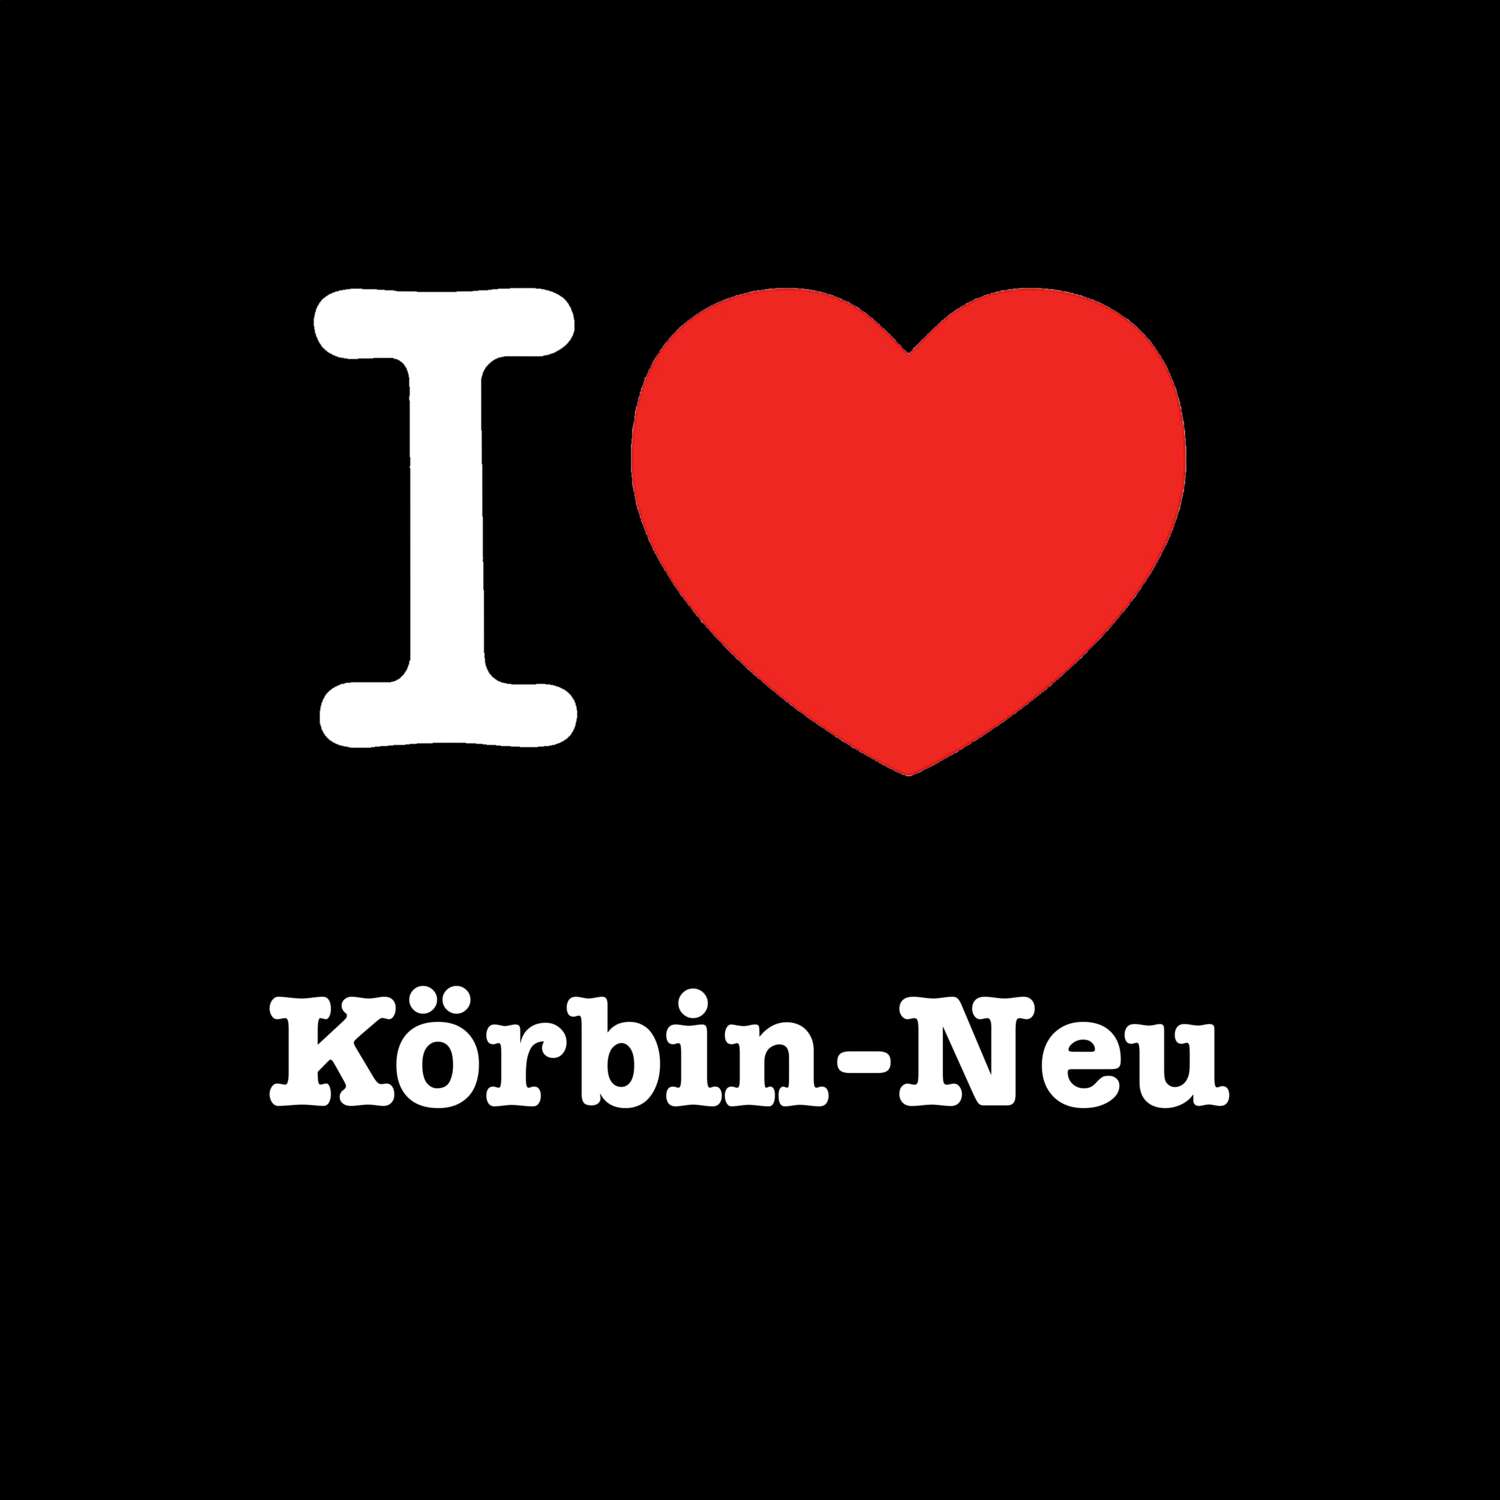 Körbin-Neu T-Shirt »I love«